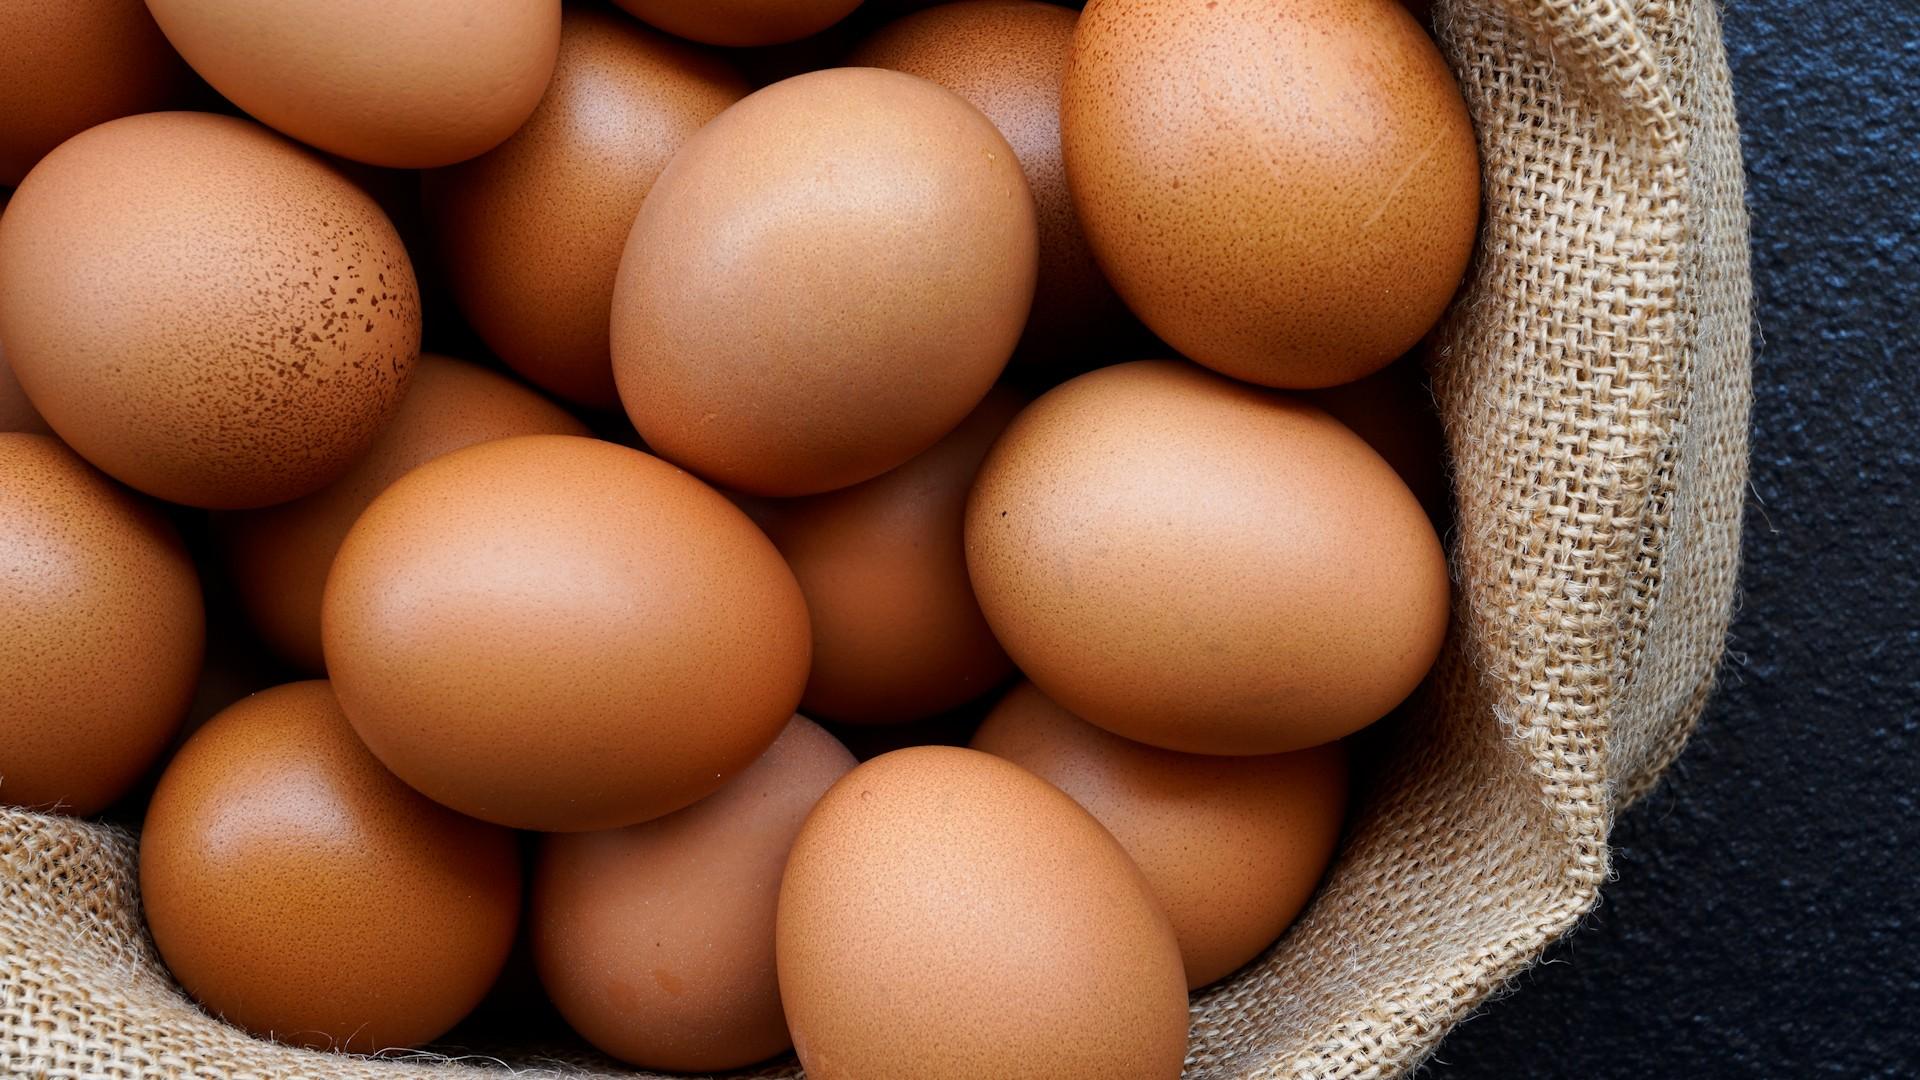 De ce unele ouă prezintă pete sau denivelări (depuneri) pe coajă